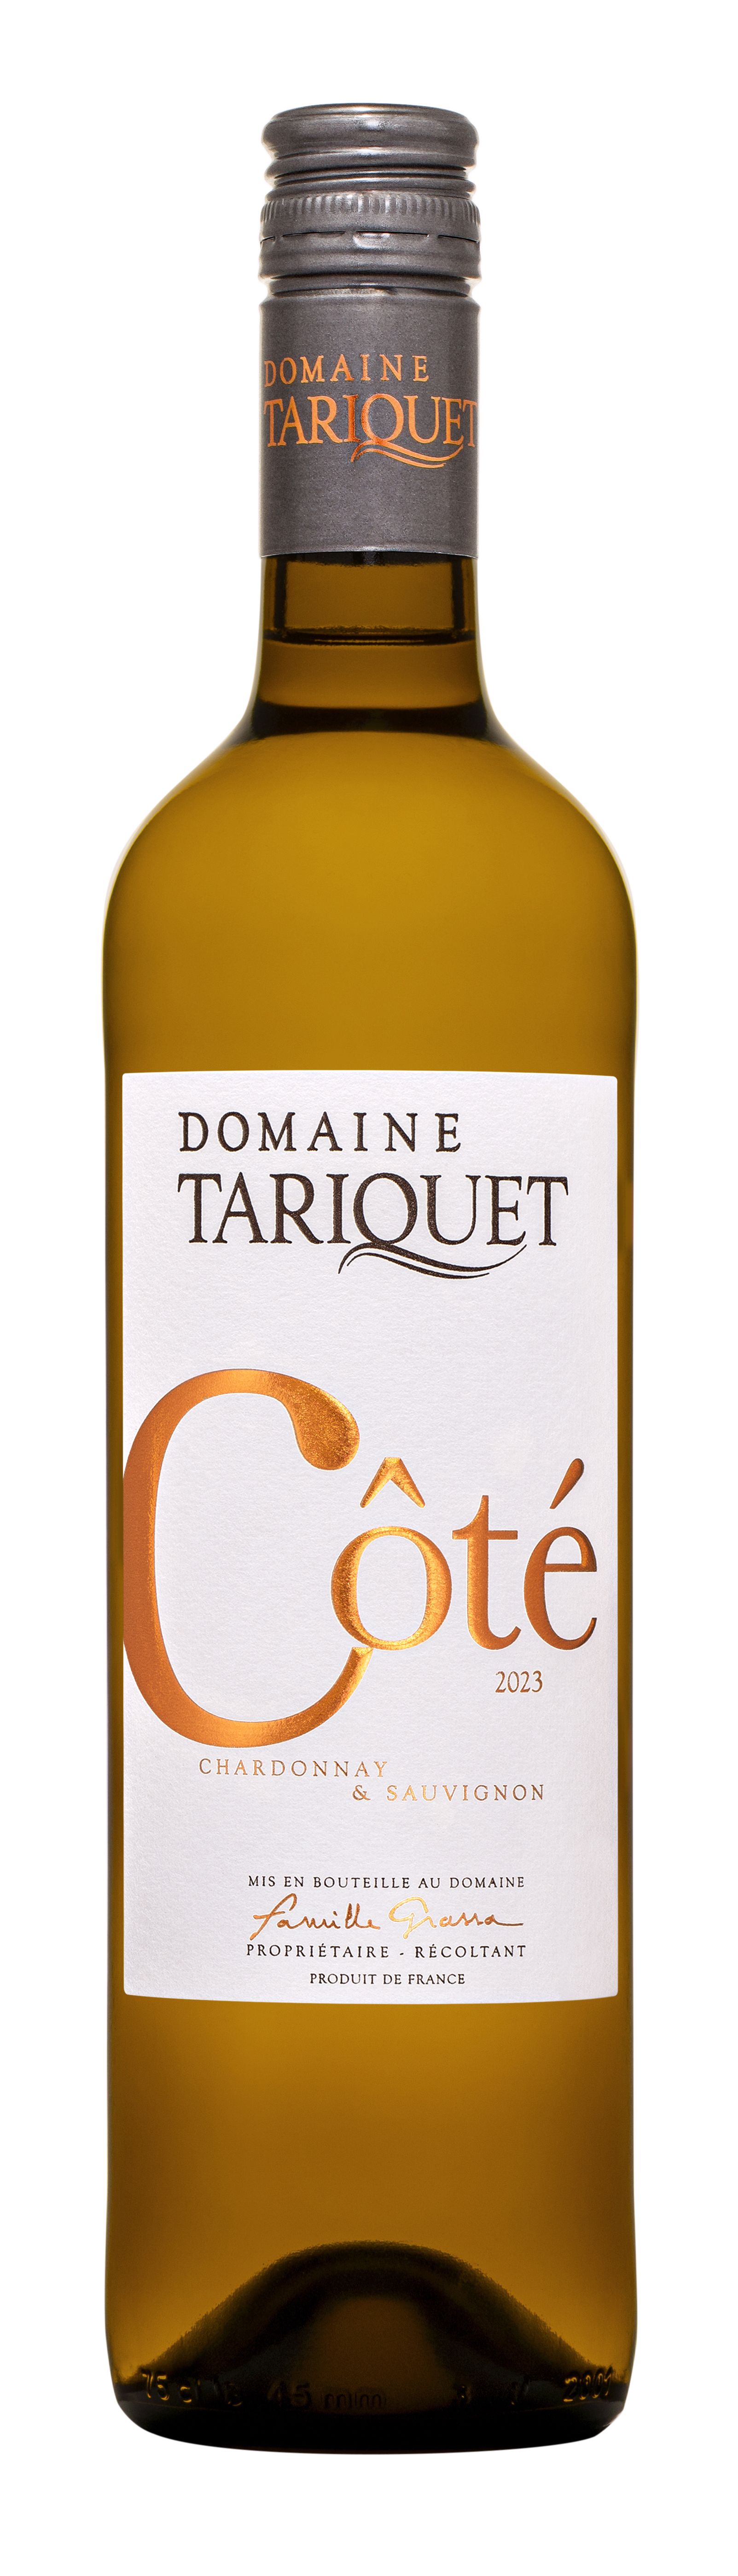 Domaine Tariquet Côté